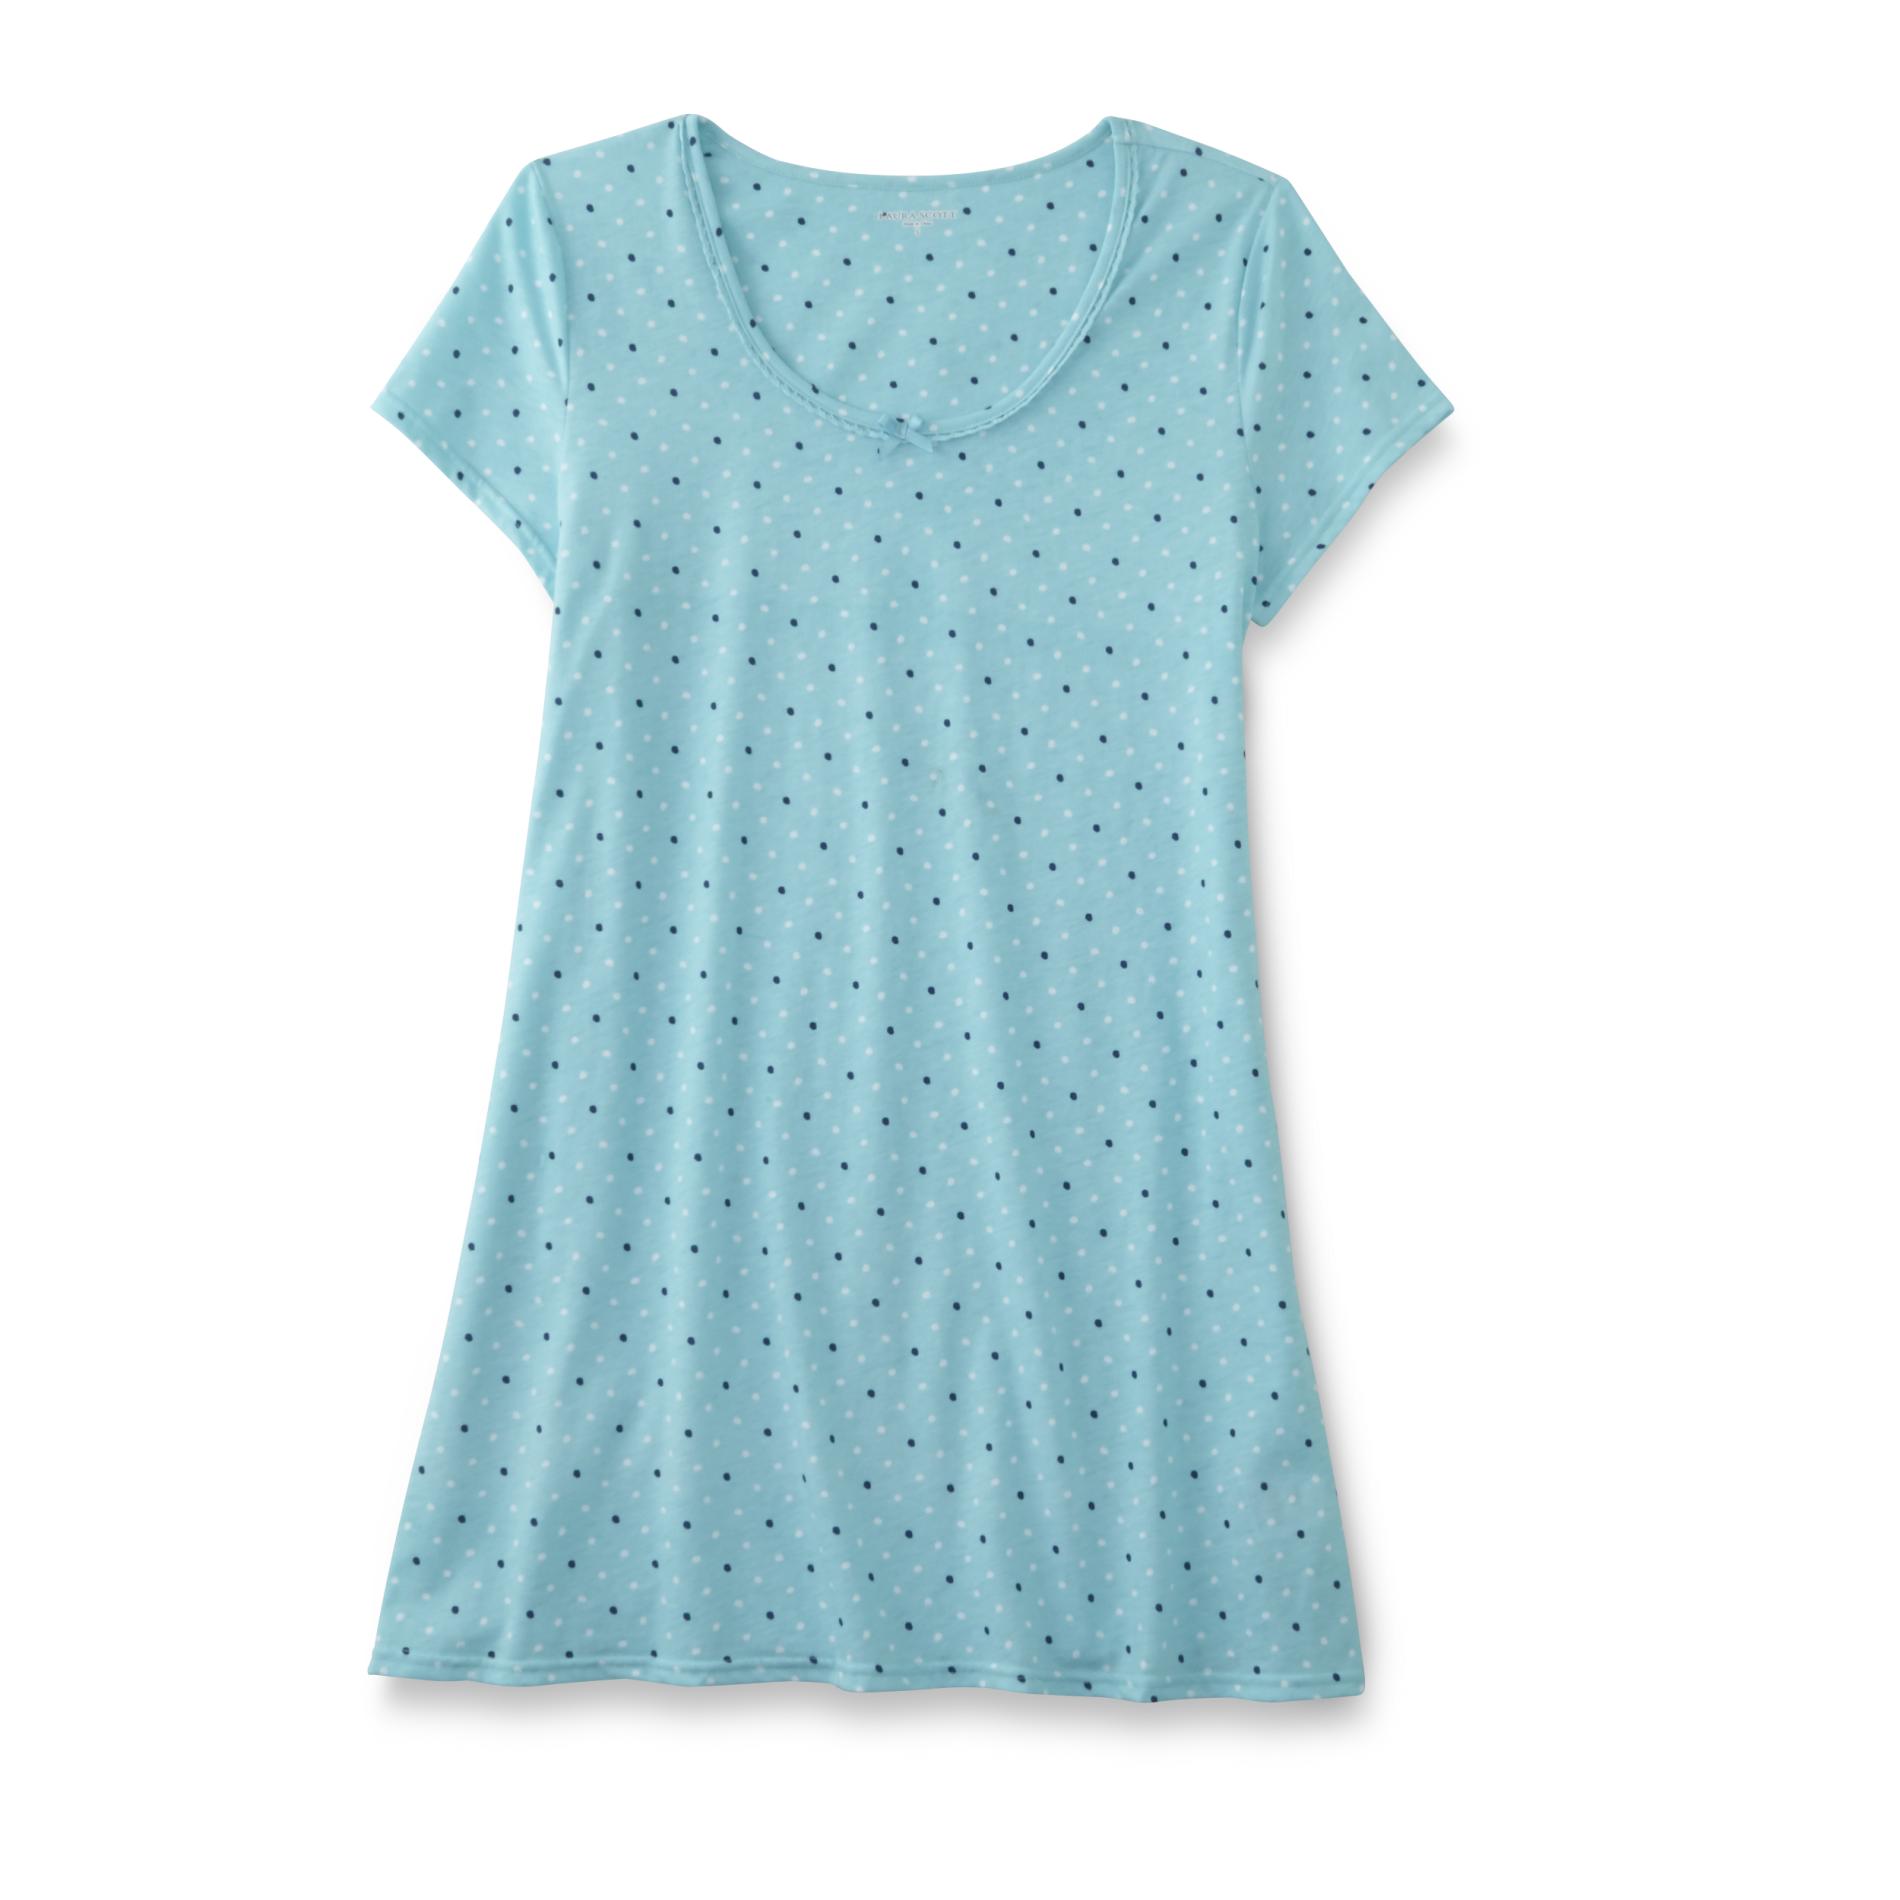 Women's Sleep Shirt - Polka Dot